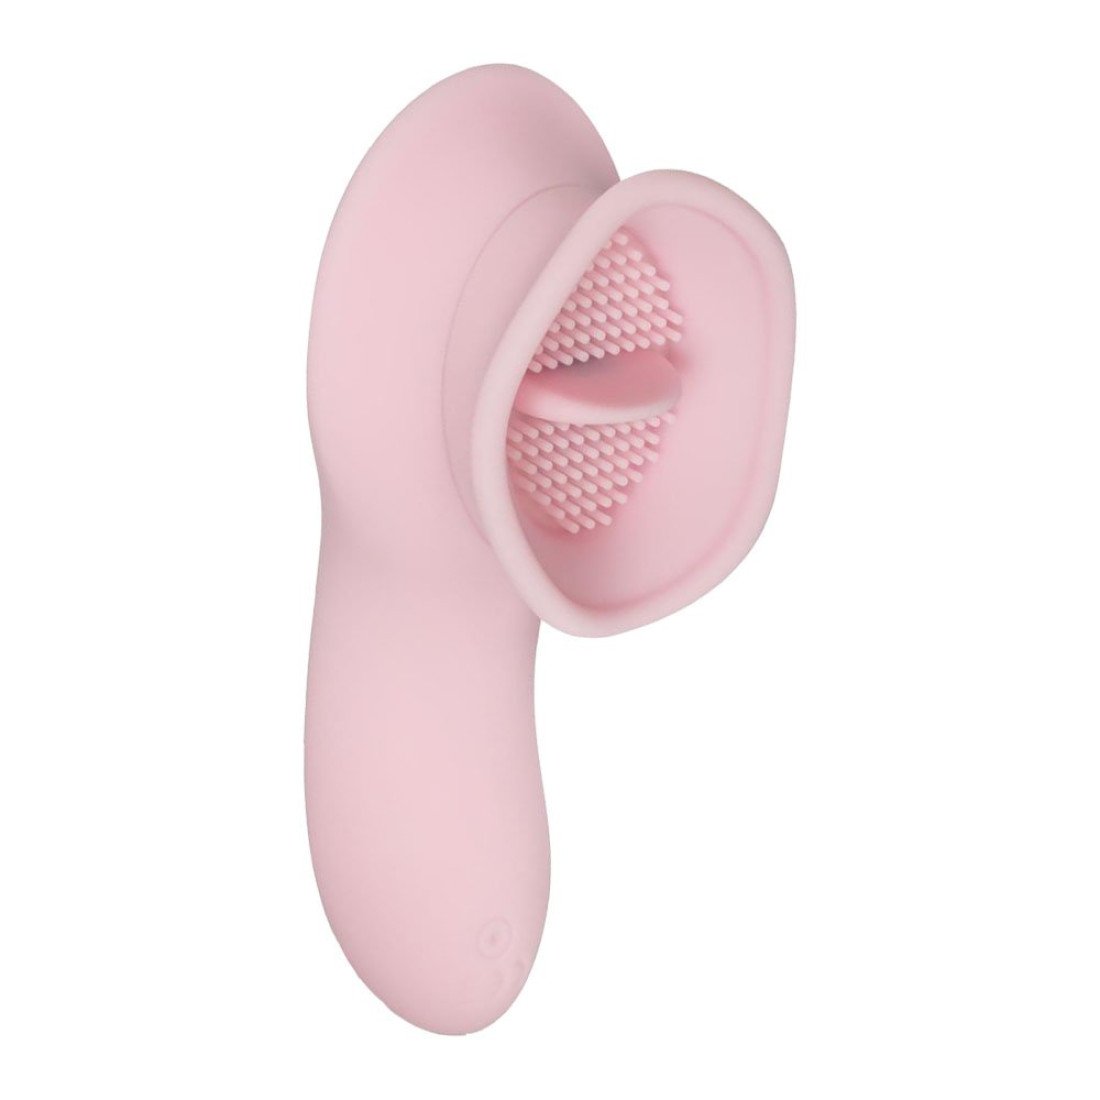 Klitorinis stimuliatorius „Clitoral Stimulator With Thong“ - Teazers